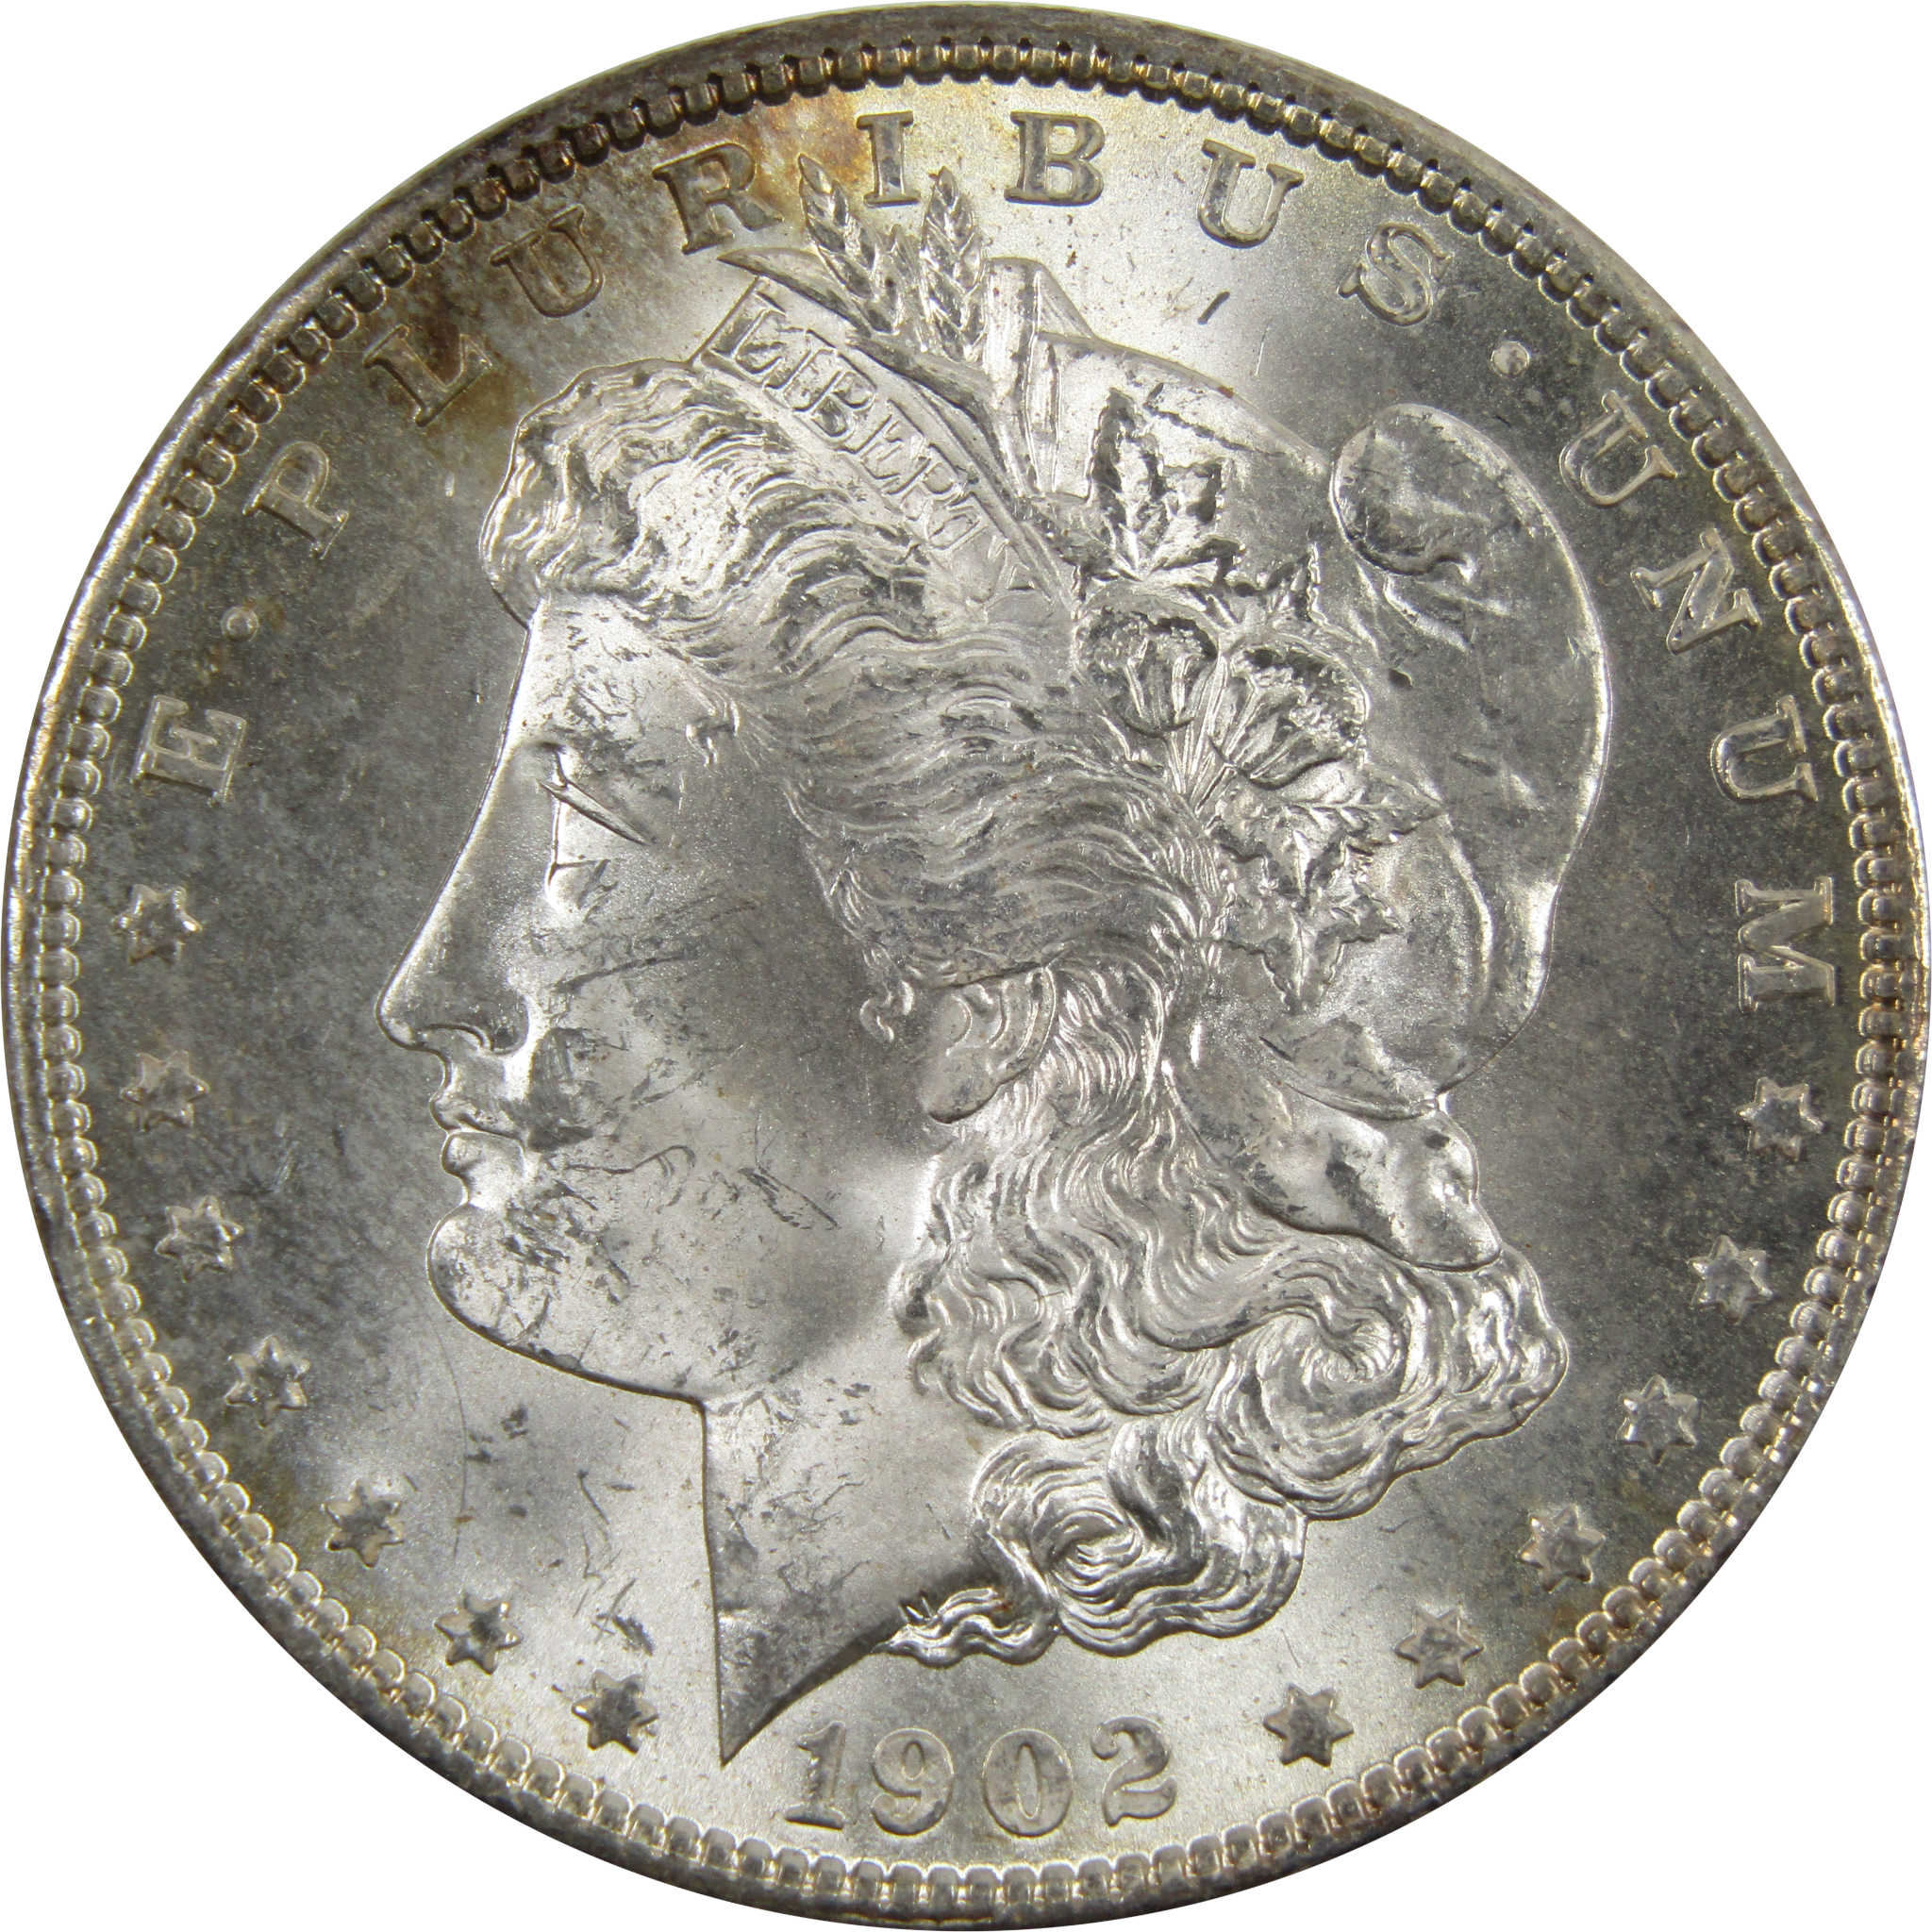 1902 O Morgan Dollar BU Choice Uncirculated 90% Silver $1 SKU:I4729 - Morgan coin - Morgan silver dollar - Morgan silver dollar for sale - Profile Coins &amp; Collectibles